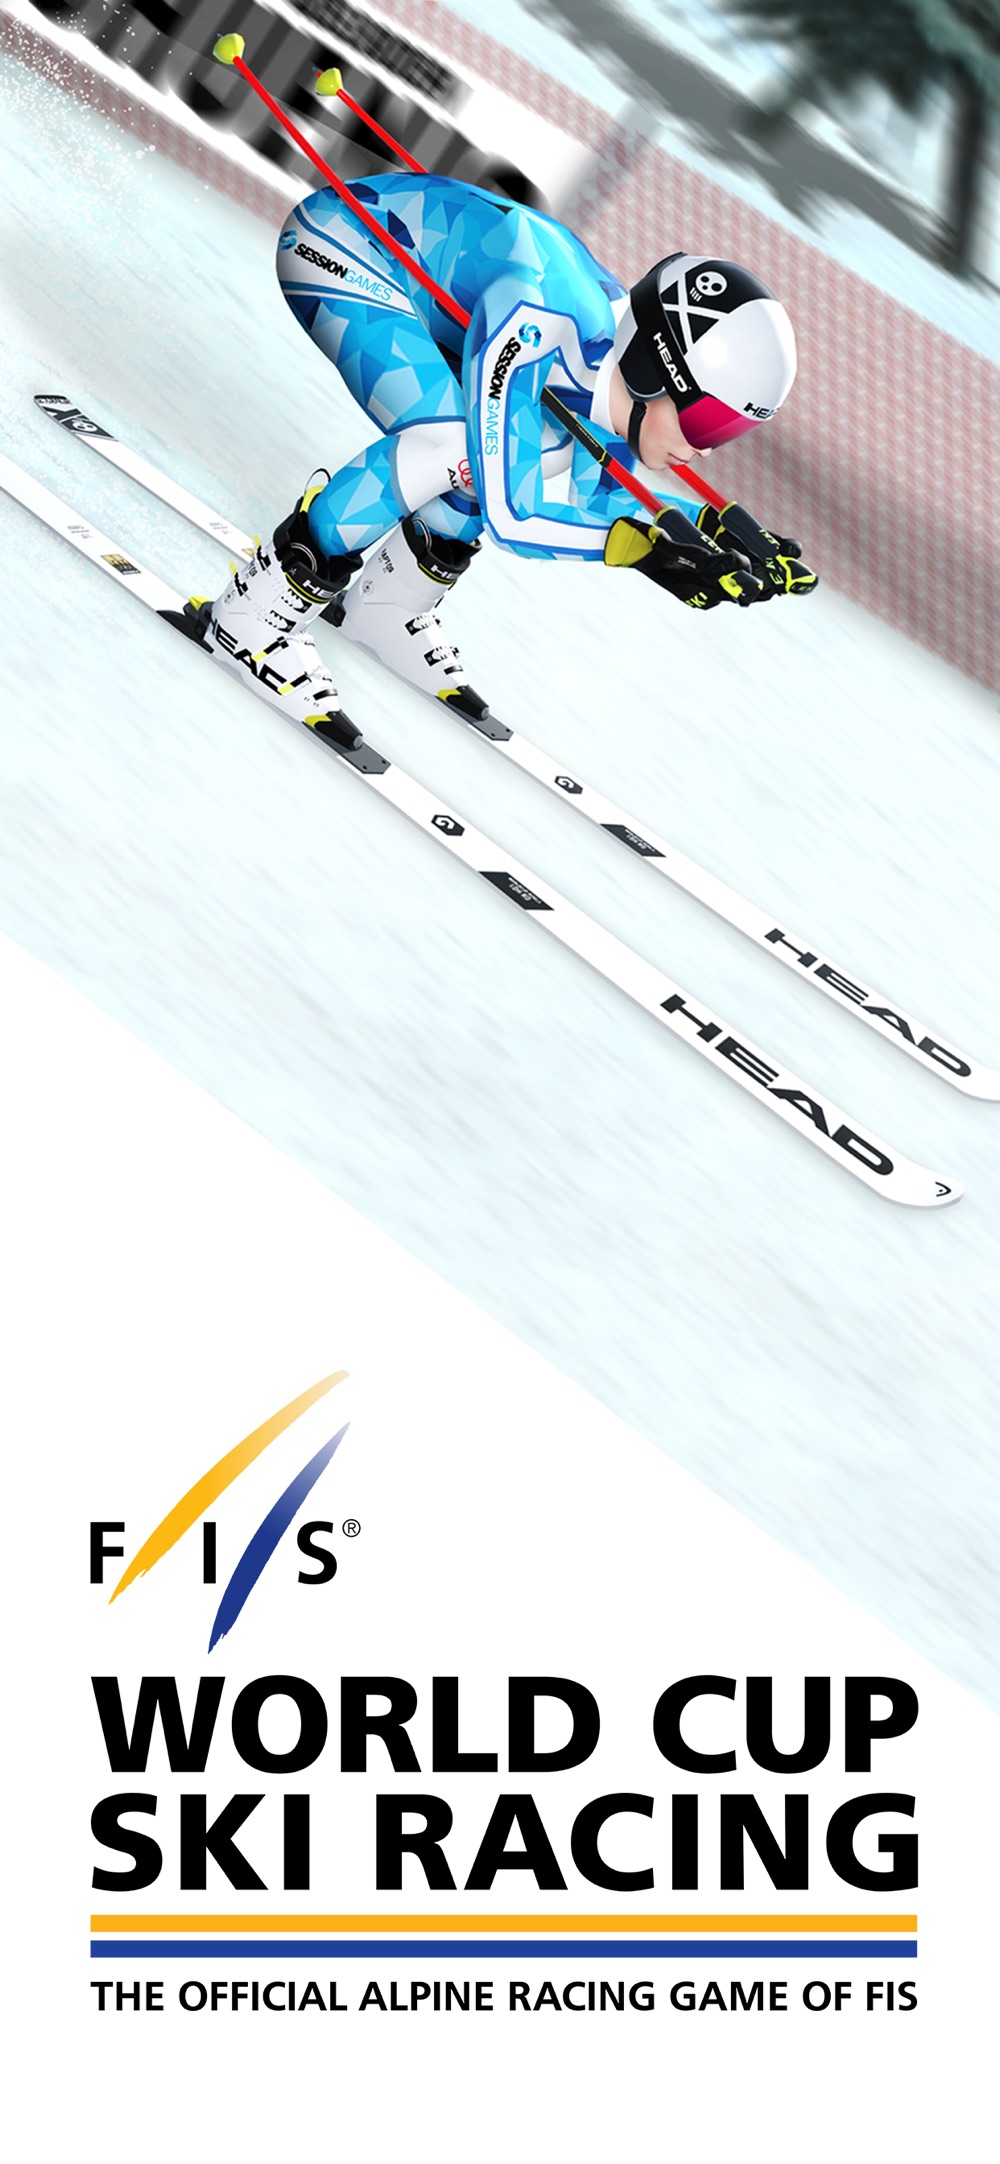 World Cup Ski Racing